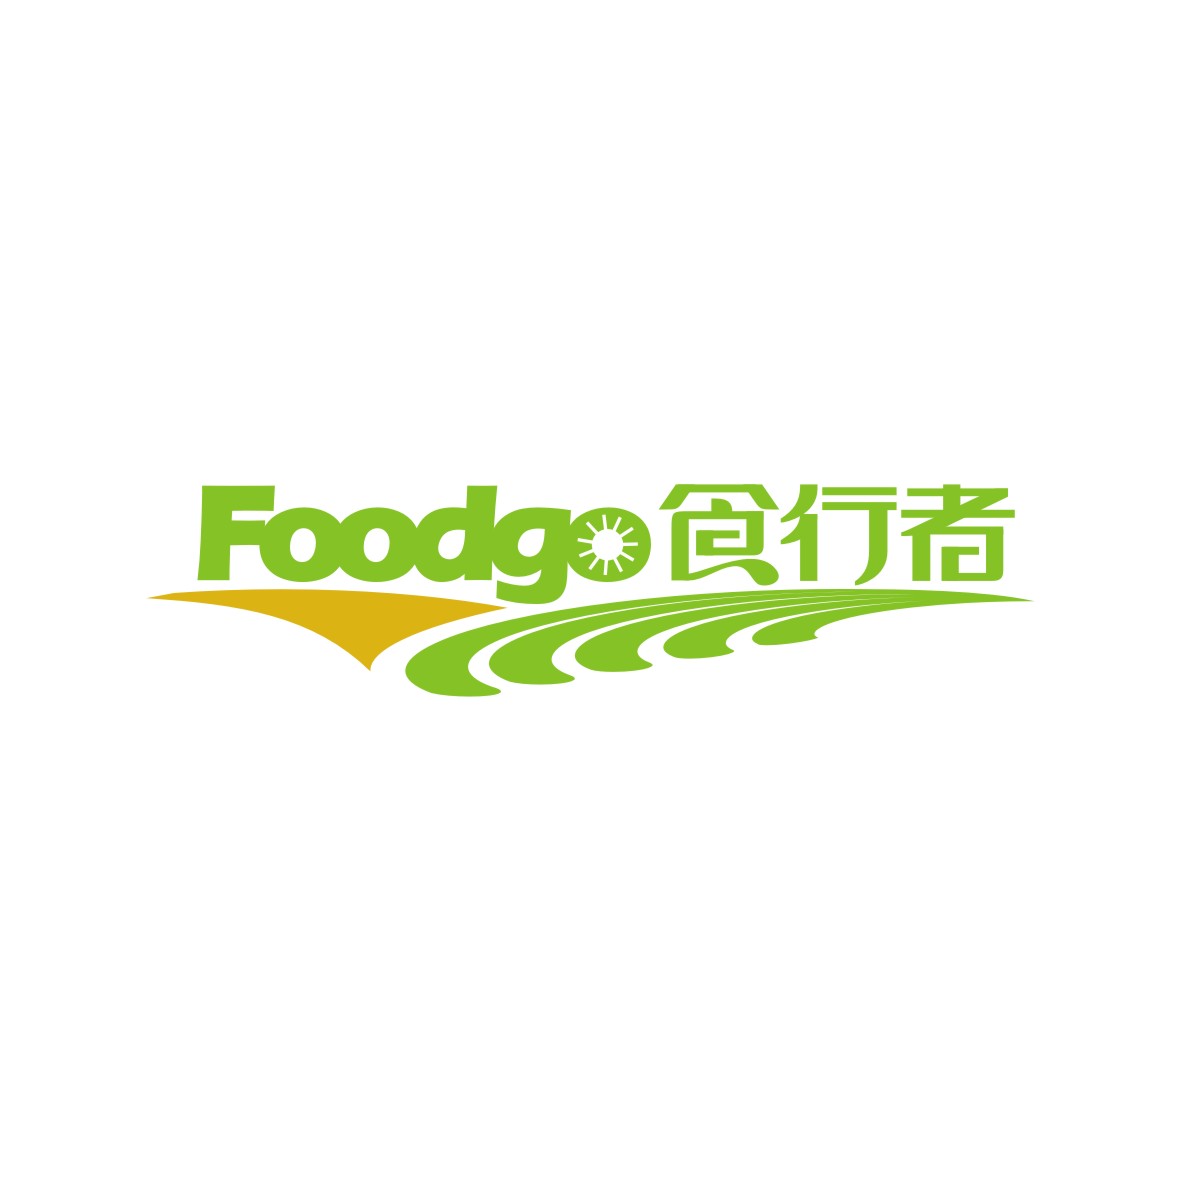 刘凯凯商标FOODGO 食行者（31类）多少钱？